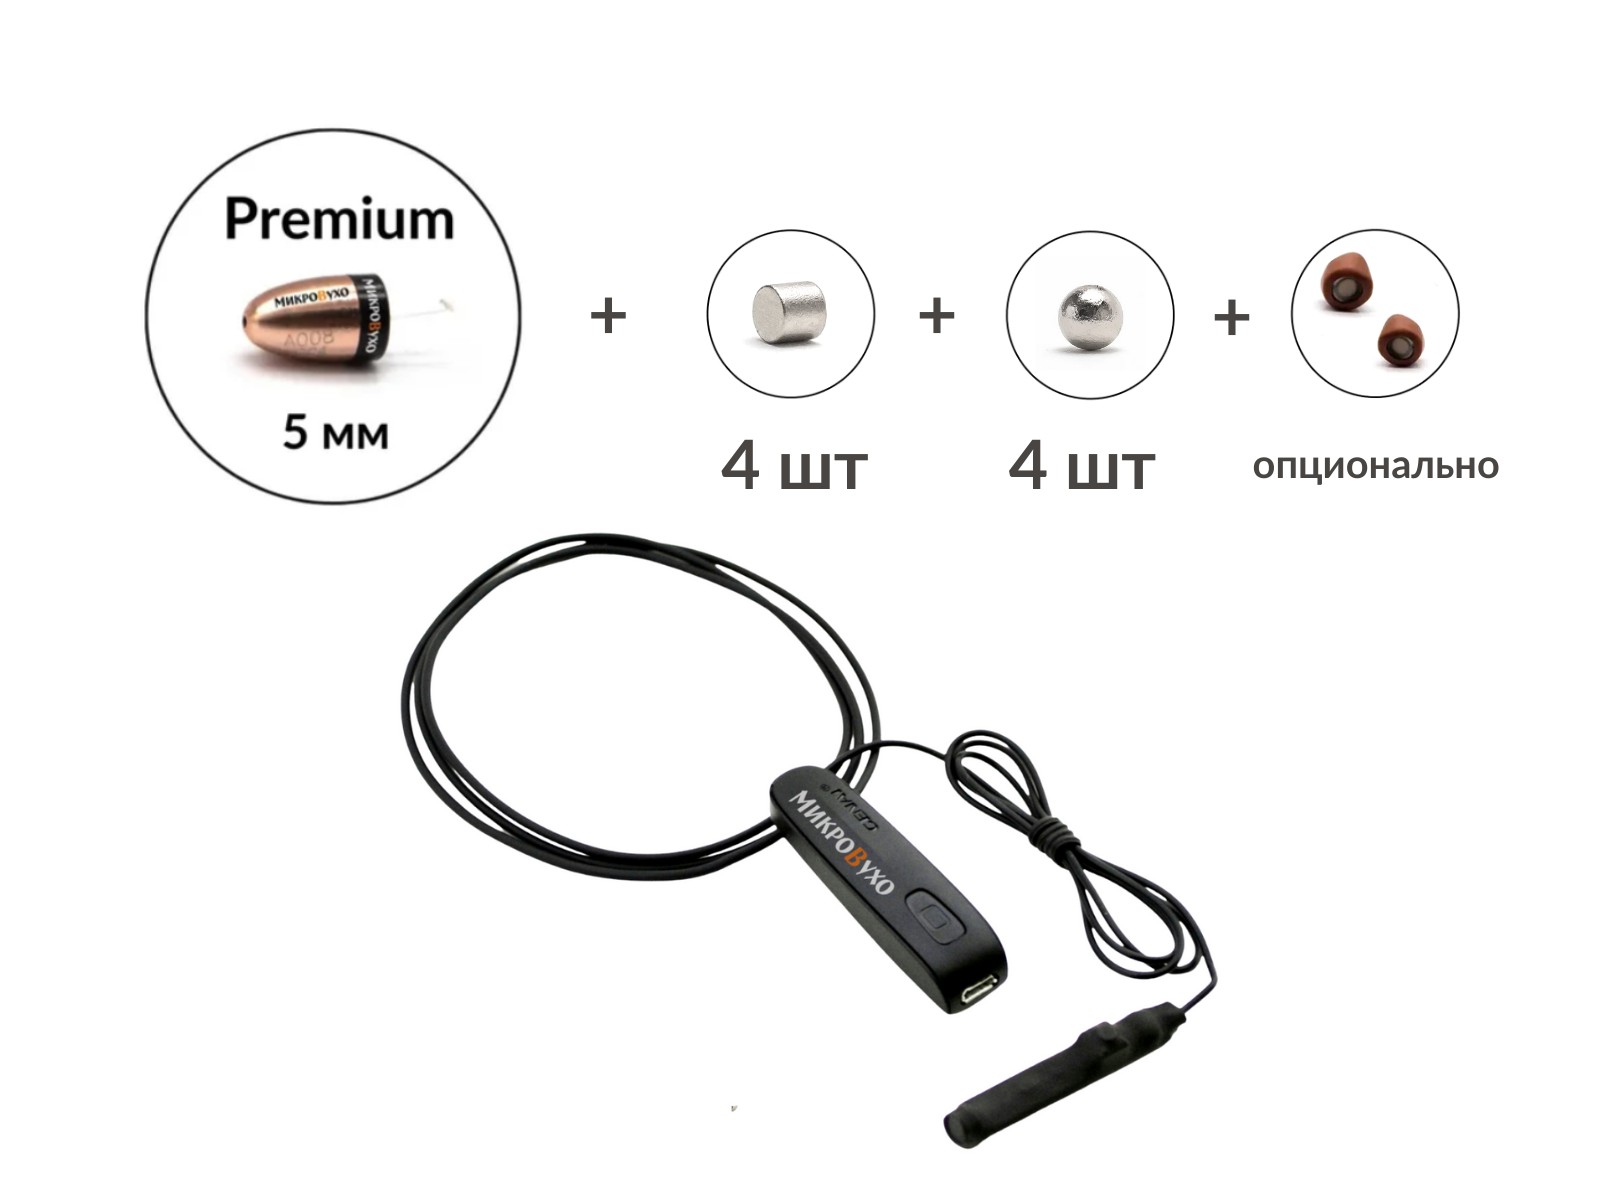 Универсальная гарнитура Bluetooth Basic с капсулой Premium и магнитами 2 мм 2